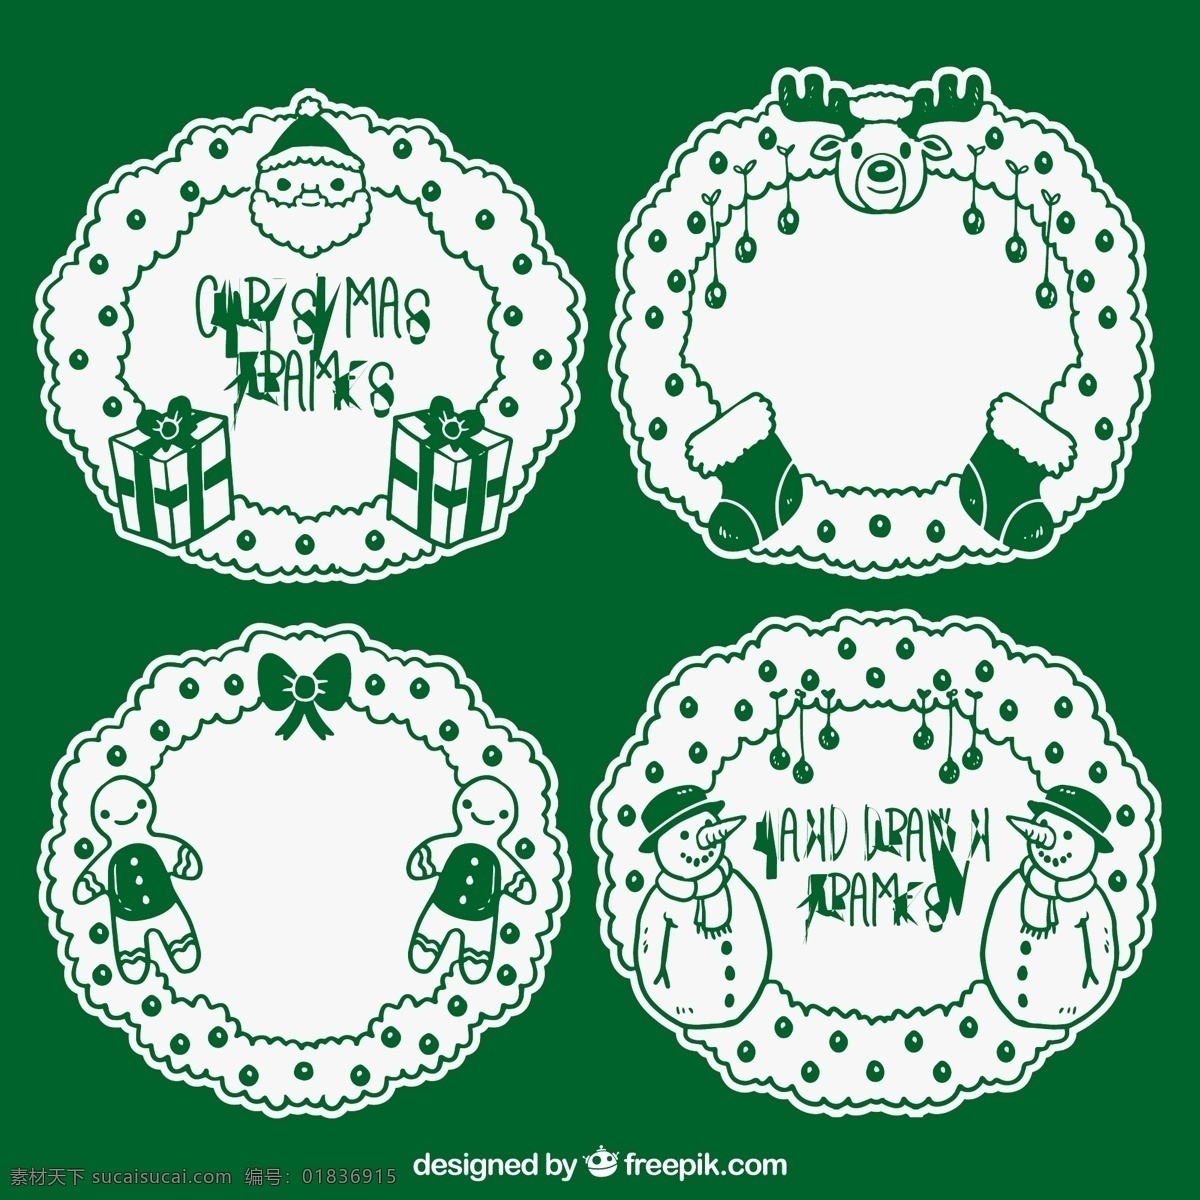 绿色圣诞相框 架 圣诞节 边界 框架 绿色 圣诞快乐 冬天快乐 庆祝 节日 装饰 节日快乐 圣诞架 包装 圣诞装饰 季节 白色